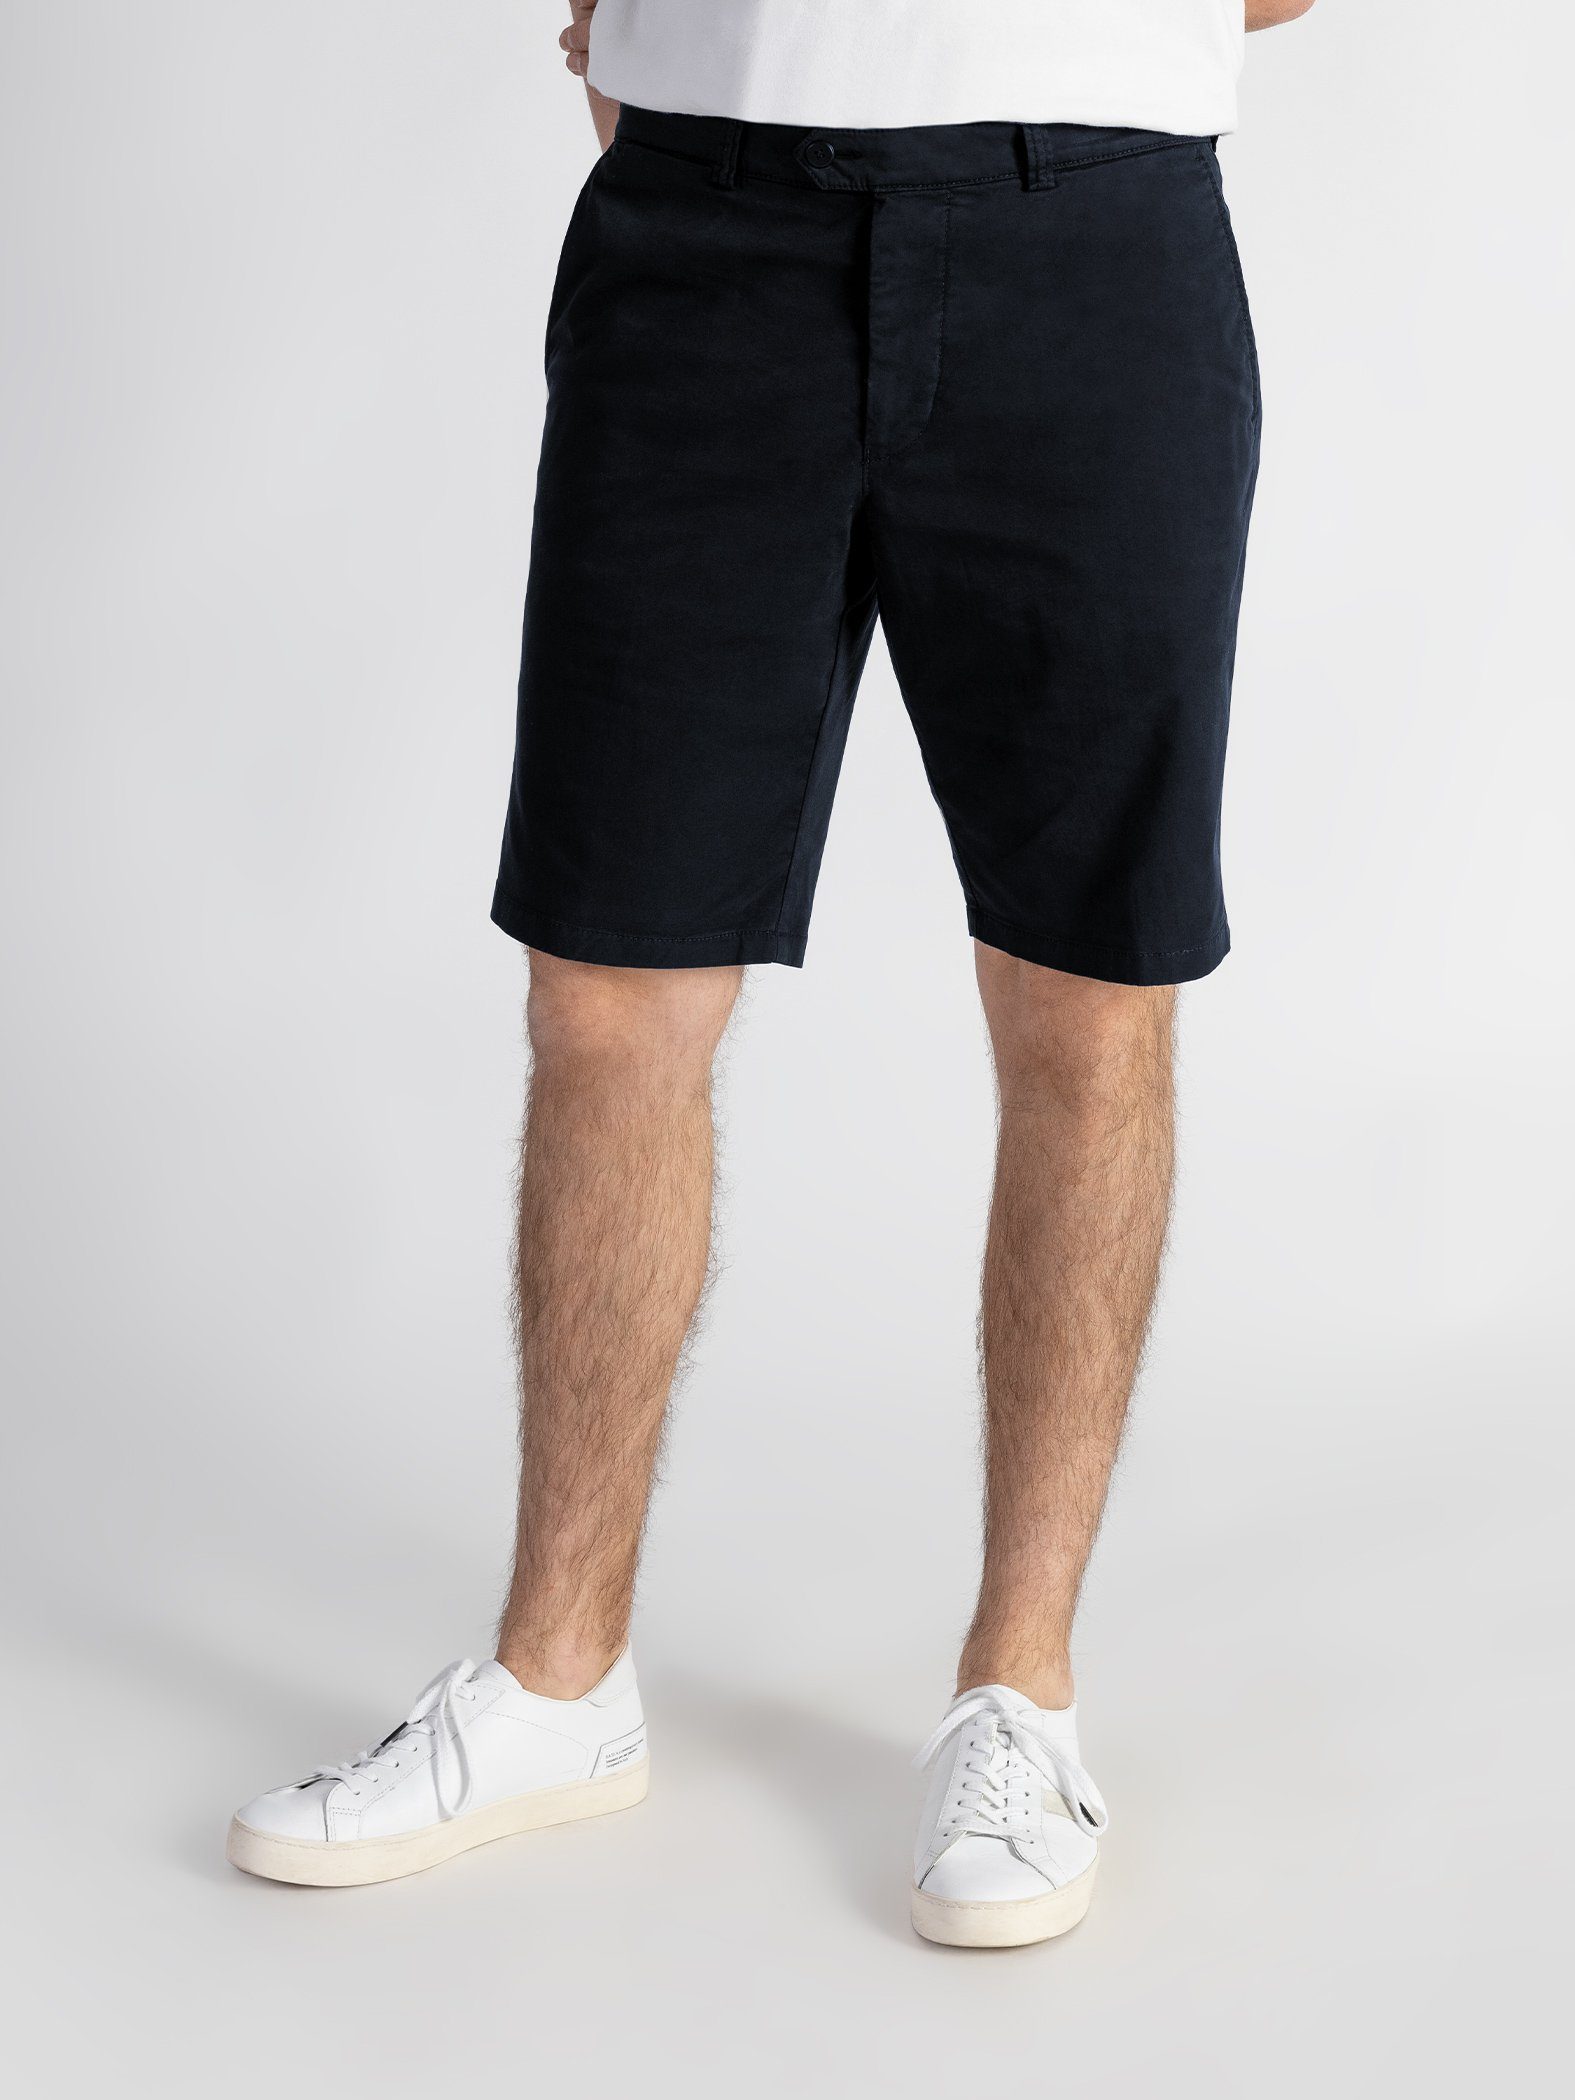 TwoMates Shorts Farbauswahl, mit GOTS-zertifiziert elastischem Shorts Dunkelblau Bund